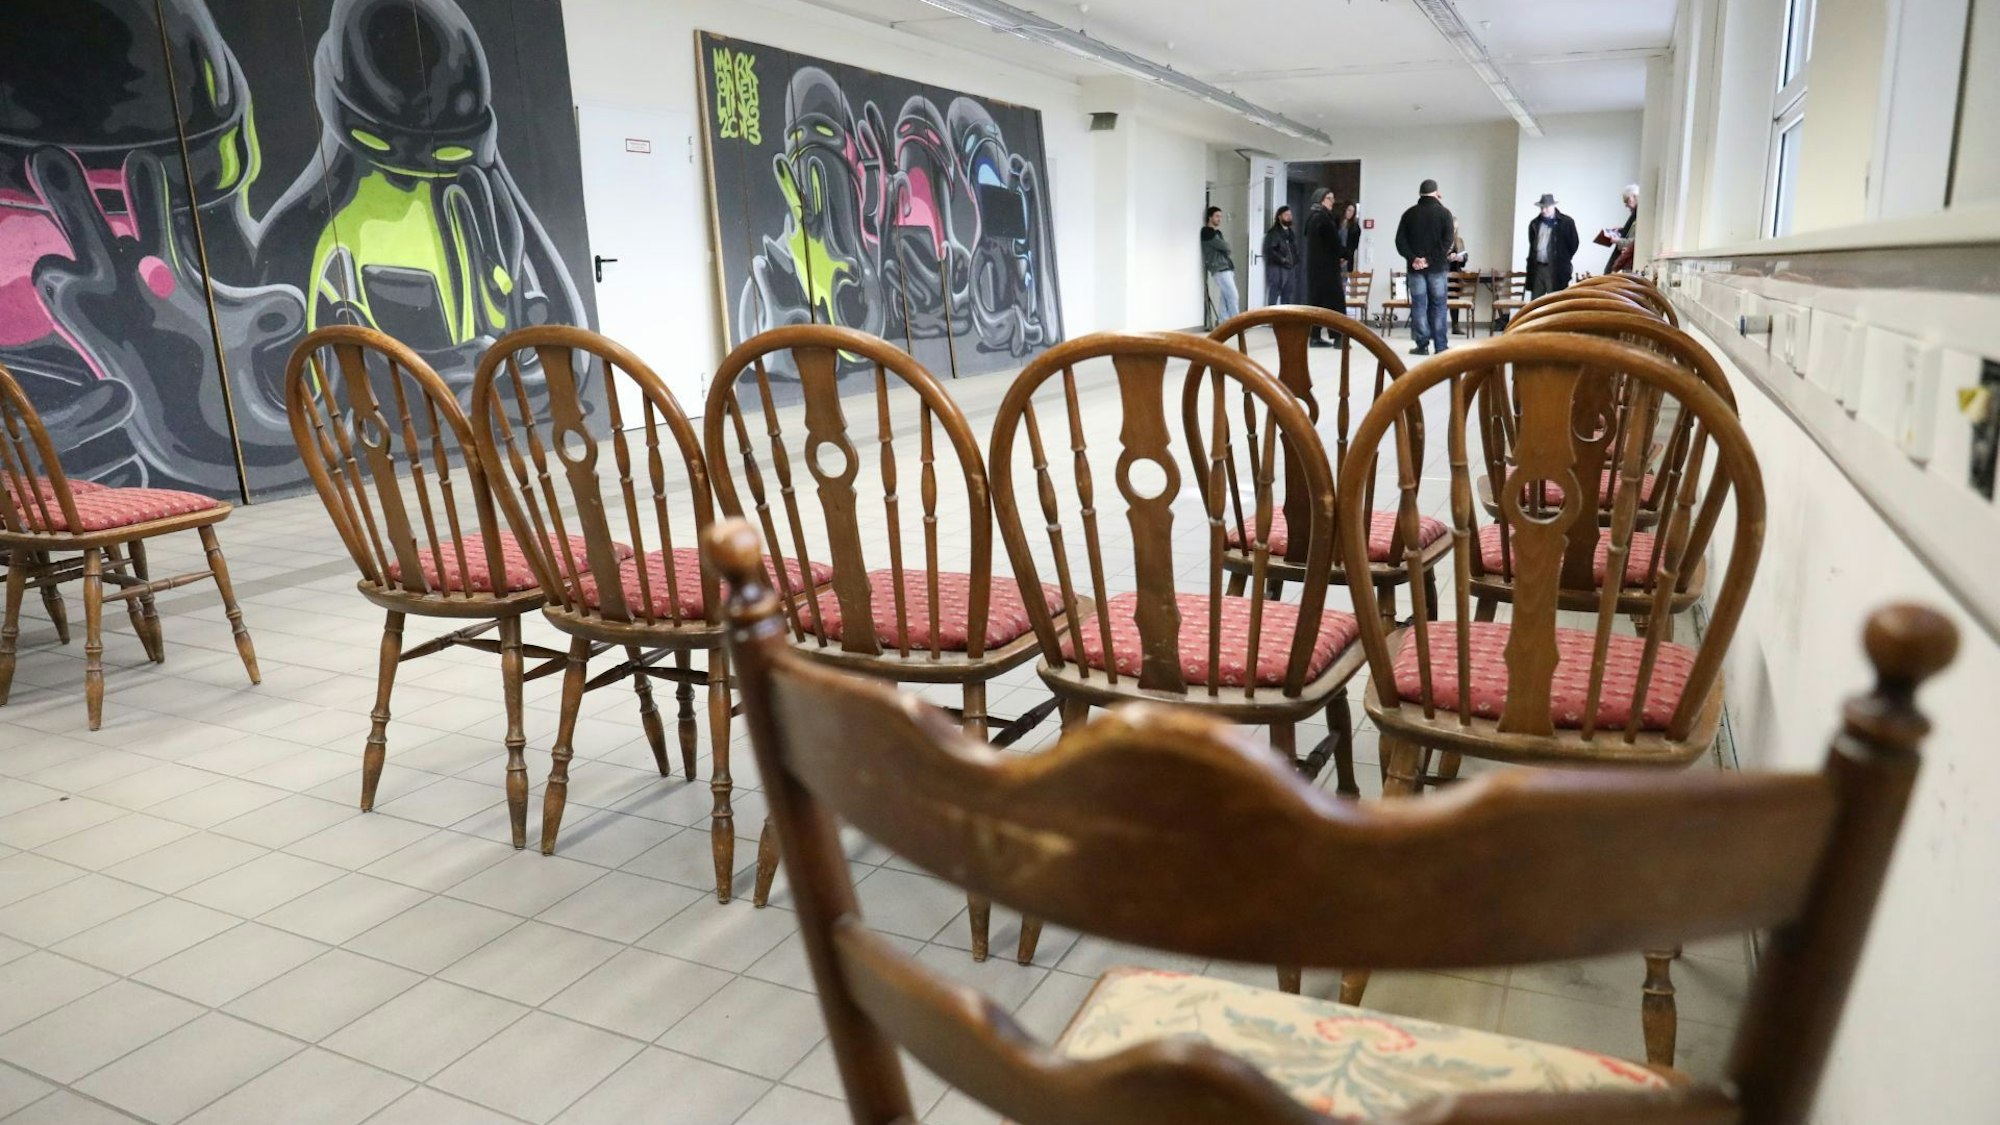 In einer langen Halle stehen schon einige braune Holzstühle für das Konzert bereit. An der Wand lehnen großformatige Streetart-Kunstwerke.